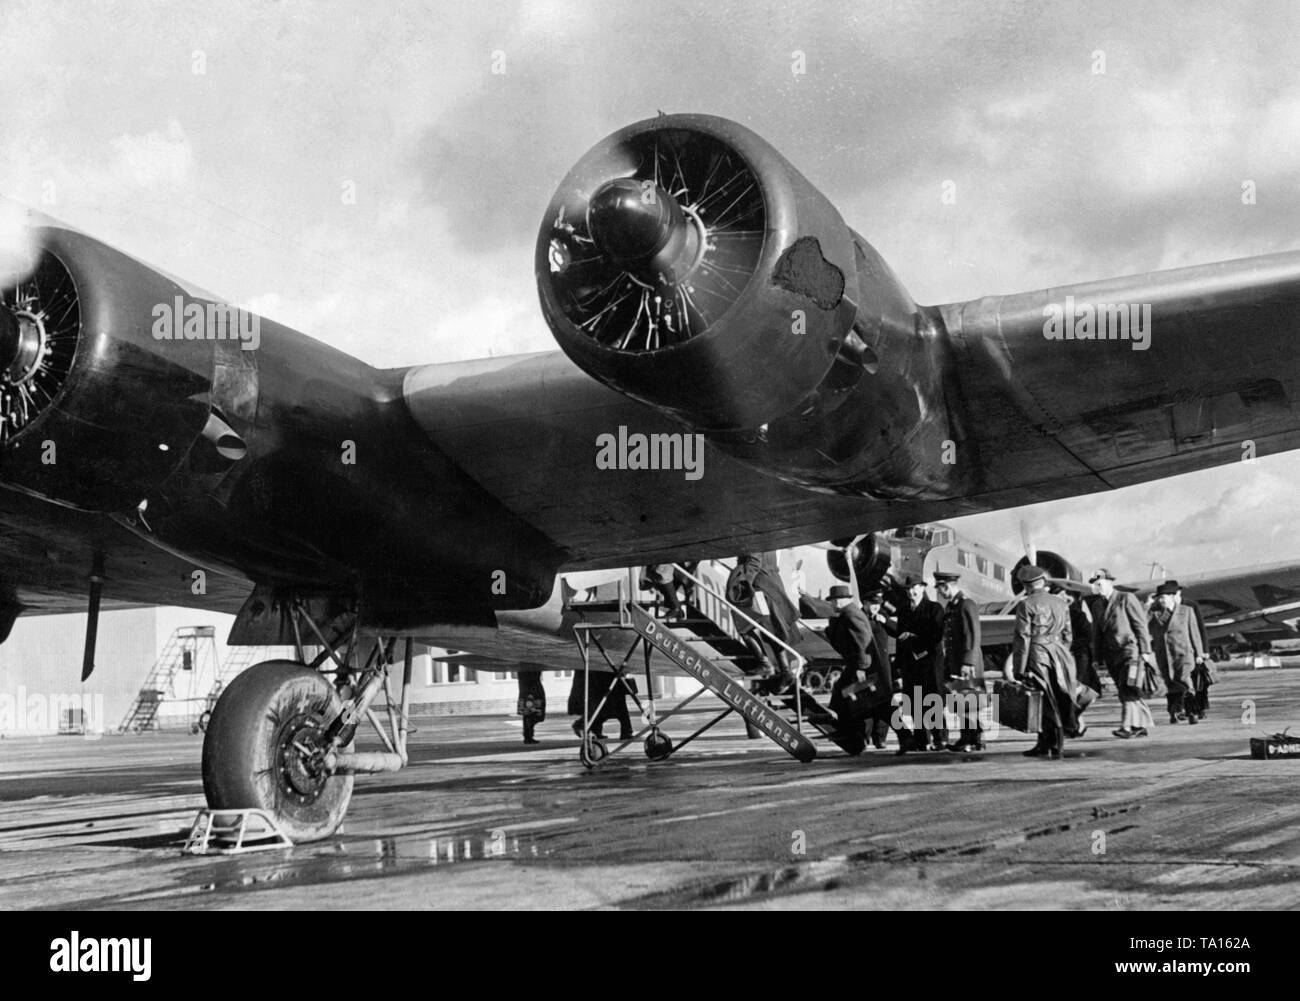 Al comienzo de la Segunda Guerra Mundial, el Aeródromo Rangsdorf comercial  civil se convirtió en el aeropuerto de Berlín, como partes de Tempelhof  fueron utilizadas para fines militares. Foto de un Focke-Wulf